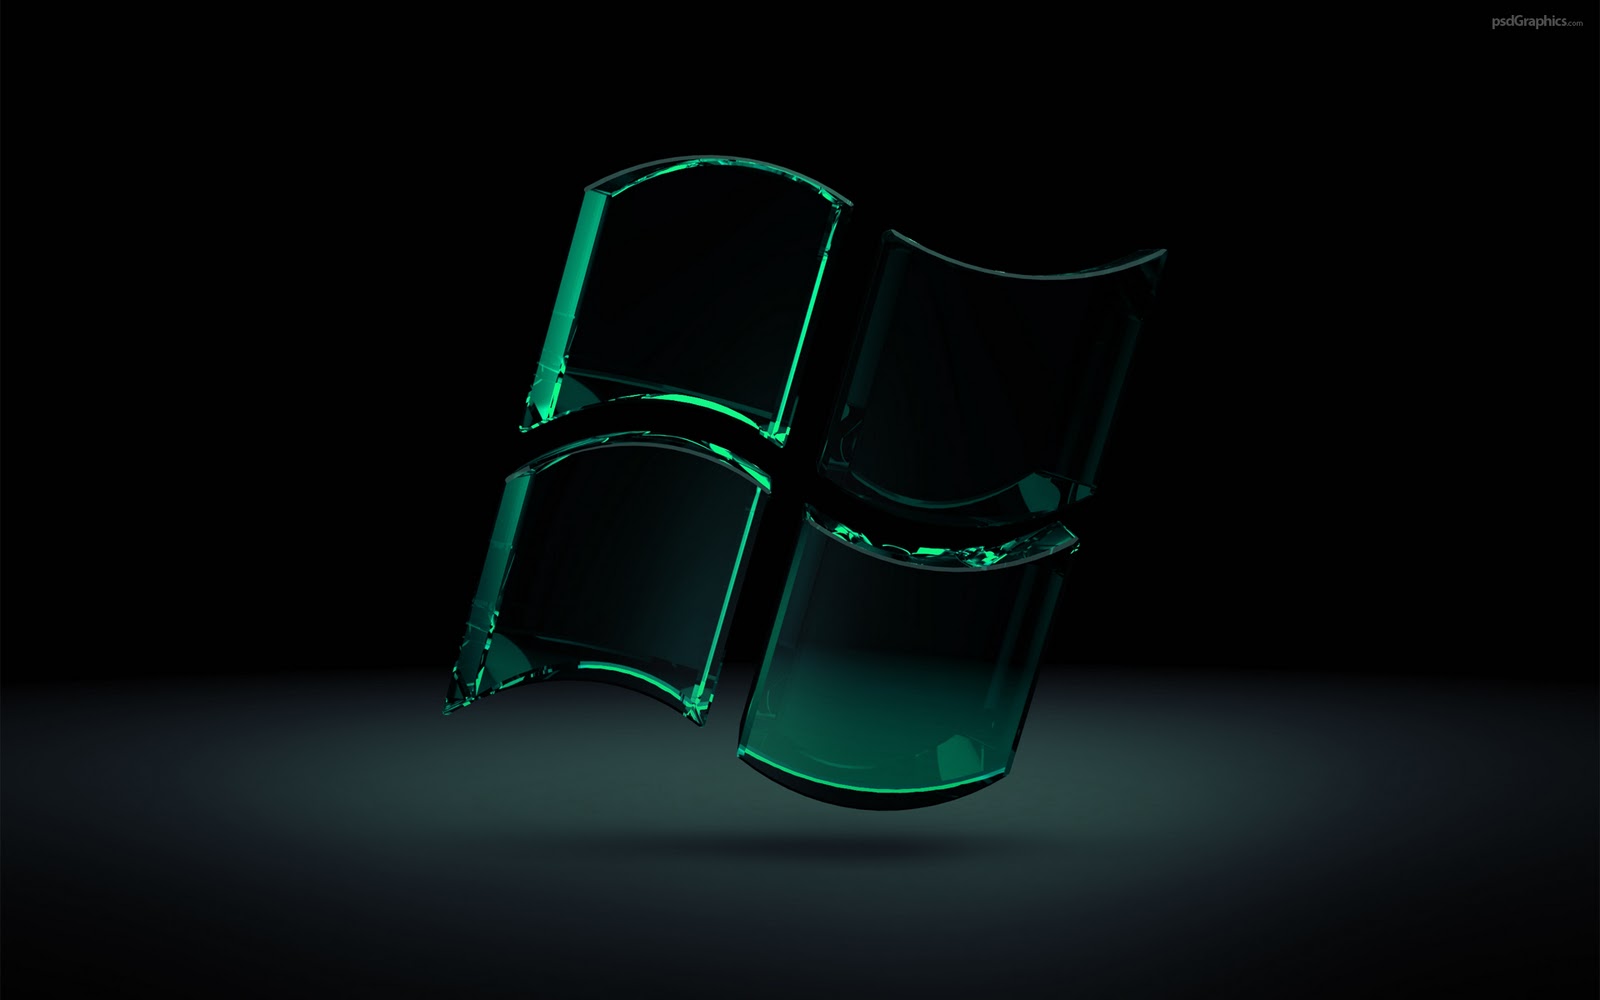 壁紙,緑,光,椅子,透明素材,静物写真